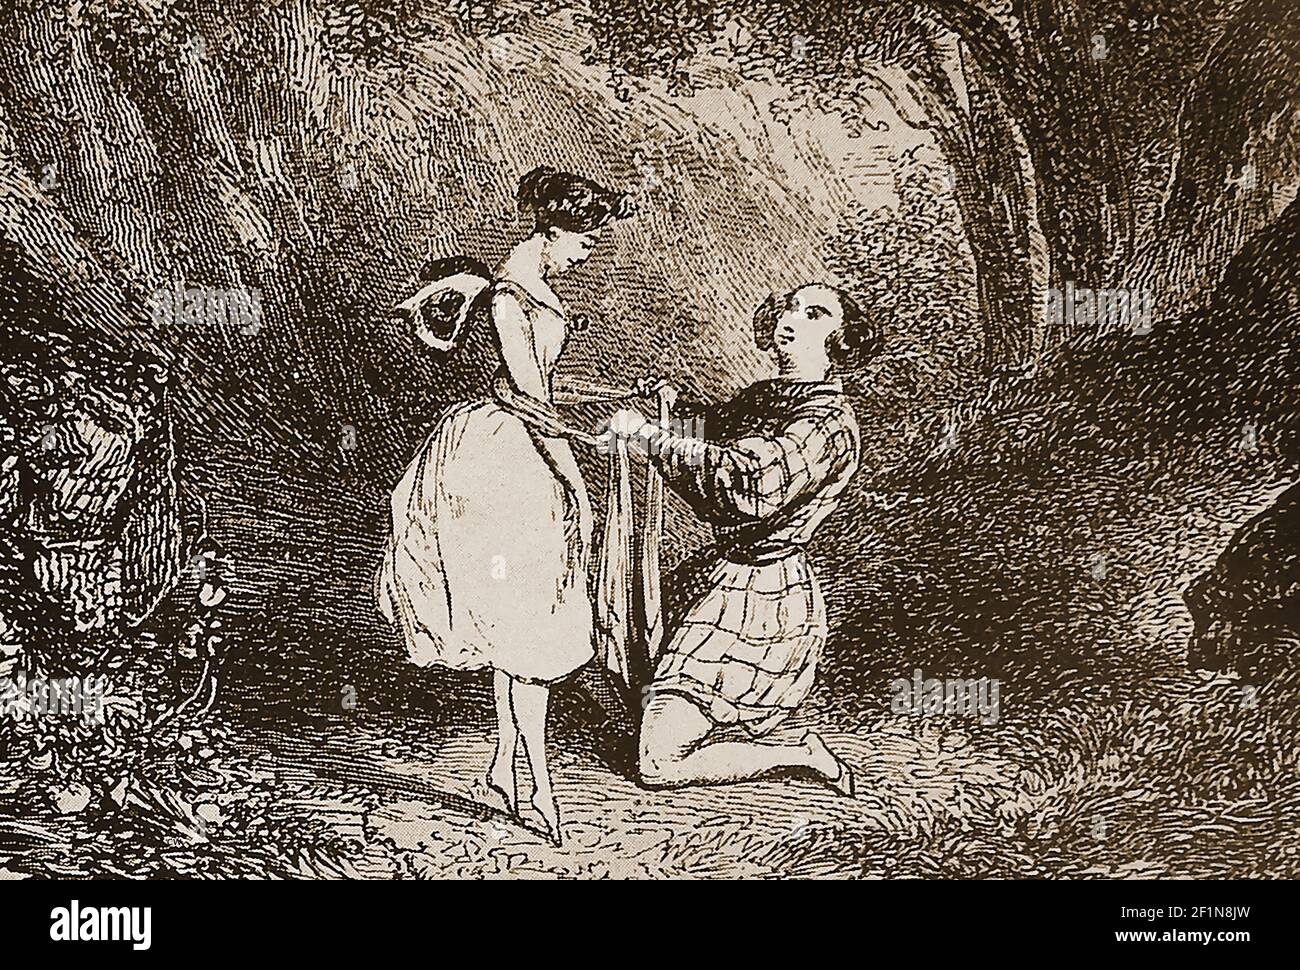 BALLET- une gravure du XIXe siècle montrant une scène de LA SYLPHIDE Act II ---- la Sylphide, également connue en danois sous le nom de Sylfiden, est un ballet romantique en deux actes. Deux versions sont connues l'original chorégraphié par Filippo Taglioni en 1832, et une autre chorégraphié par August Bournonville en 1836. Bourronville's (l'un des plus anciens ballets survivants du monde) est la seule version connue pour avoir survécu . La Sylphide a été le premier ballet connu où la danse en pointe a été utilisée à des fins artistiques (plutôt que comme une démonstration acrobatique). Banque D'Images